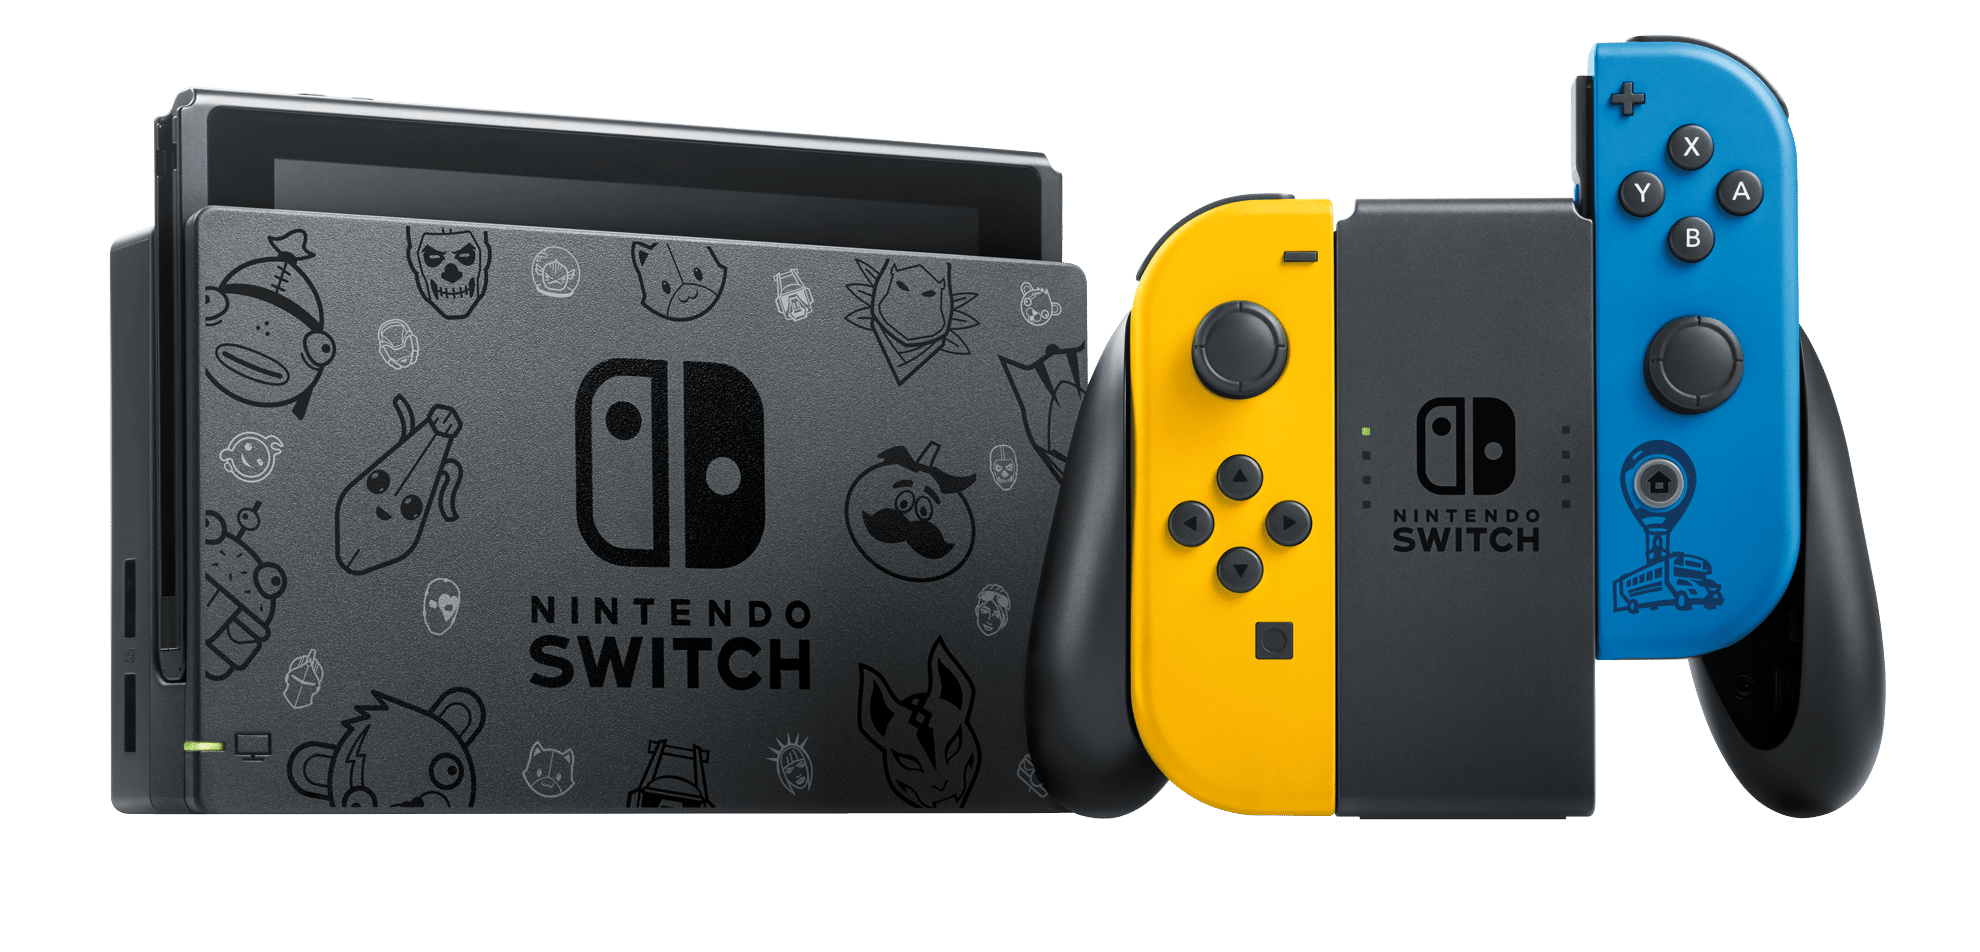 Nintendo switch спб. Игровая консоль Nintendo Switch. Игровая приставка Nintendo Switch «особое издание Fortnite». Nintendo Switch Rev 2. Nintendo Switch 2018.